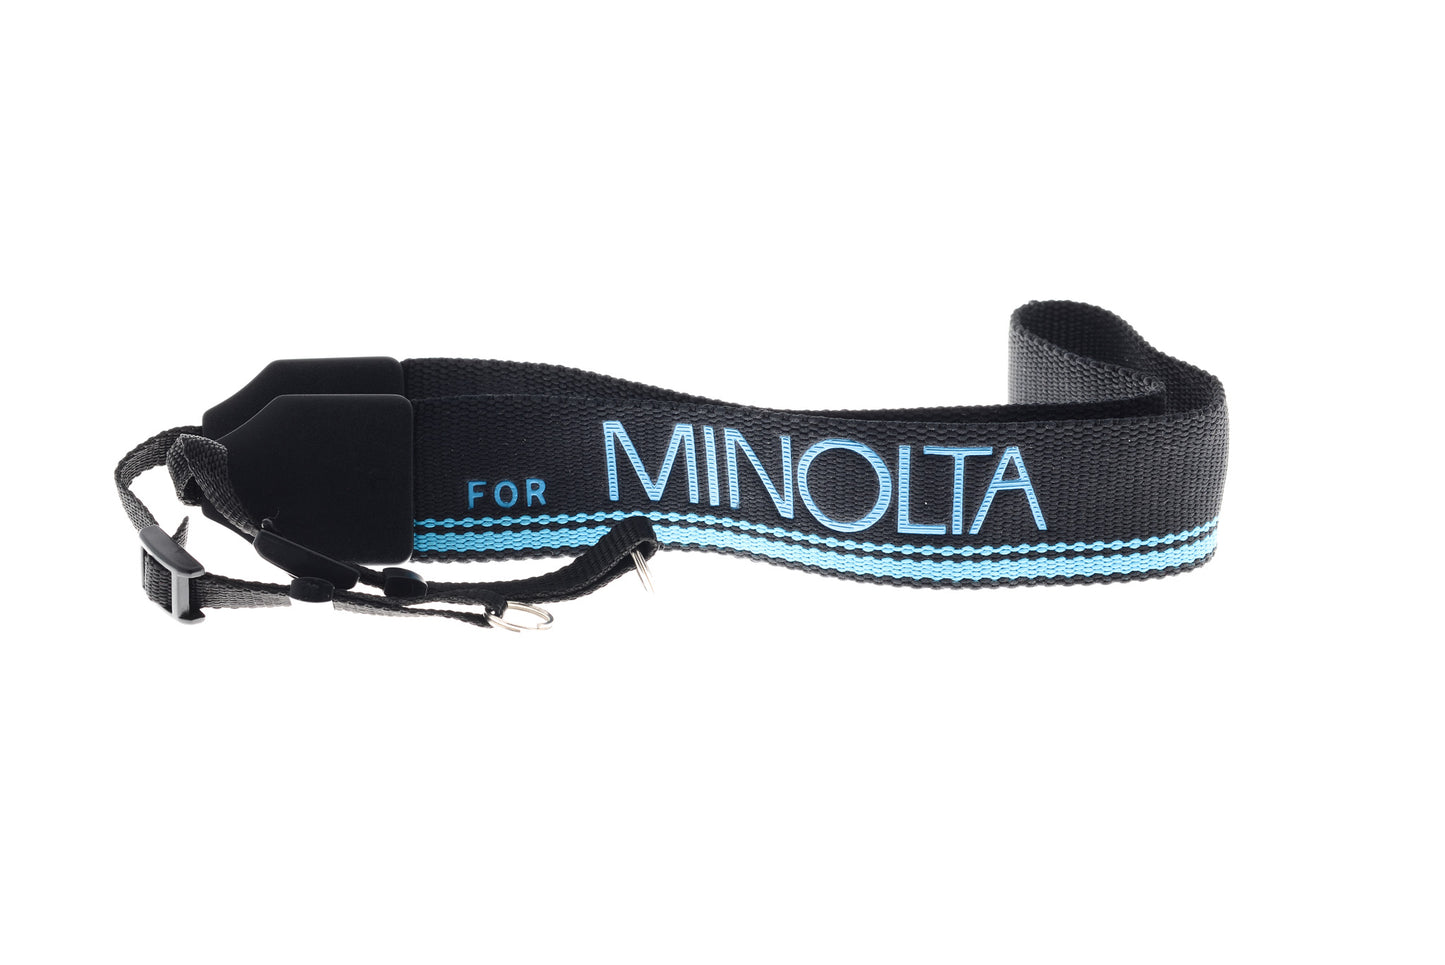 Minolta Neck Strap - Accessory